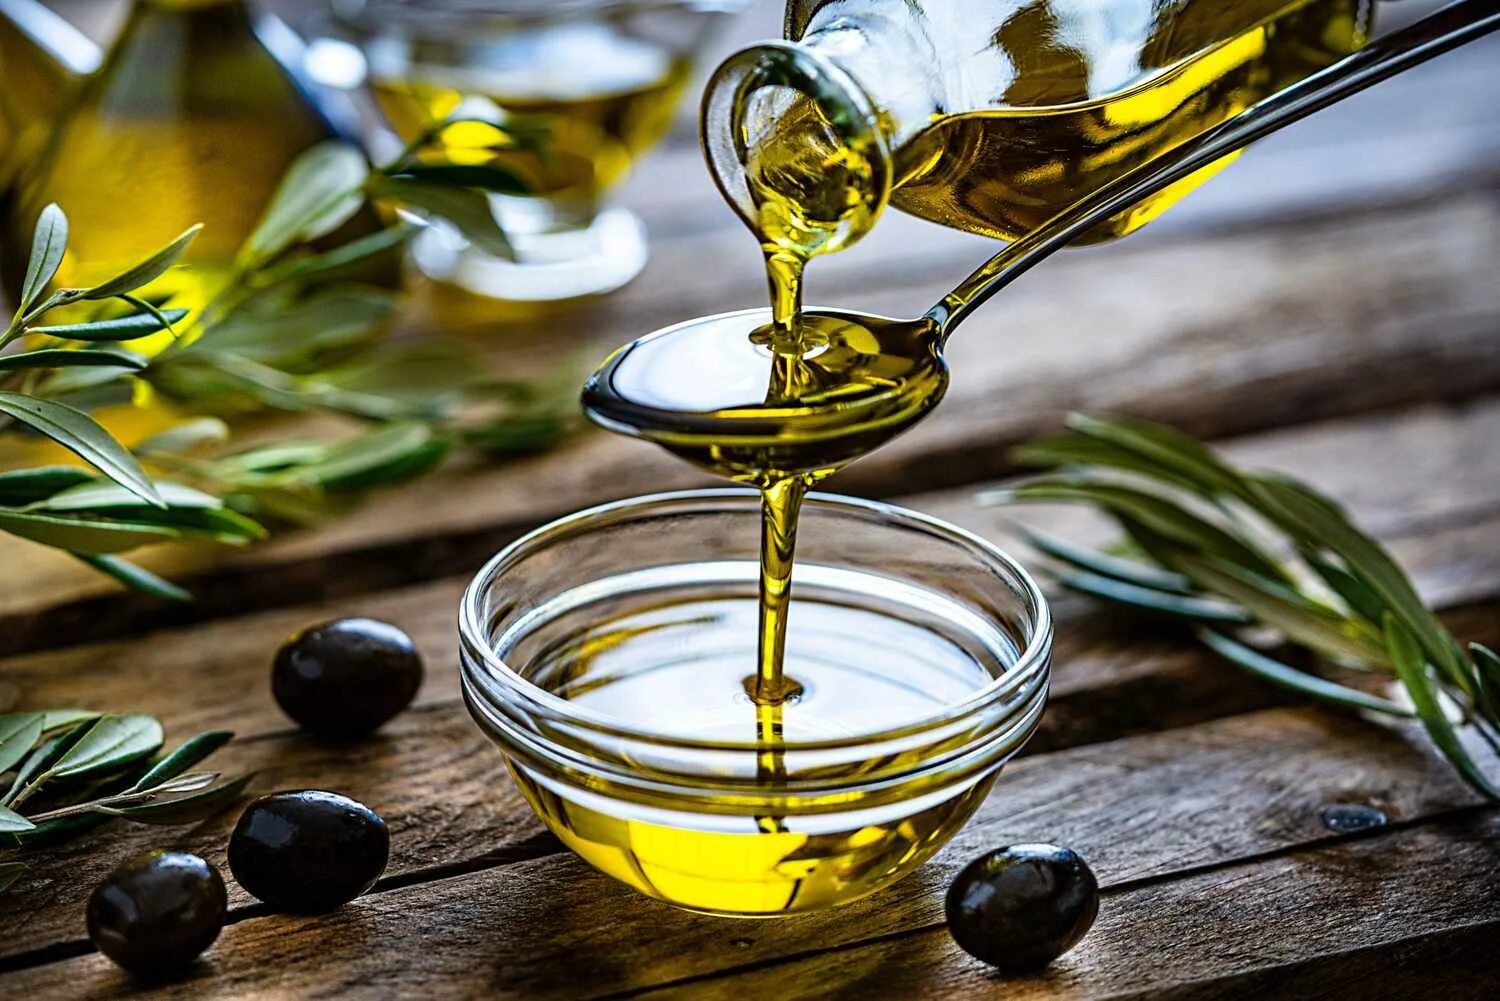 Olive Oil масло оливковое. Олив Ойл масло оливковое. Масло с оливковым маслом. Оливки и оливковое масло. Ложка масла в день